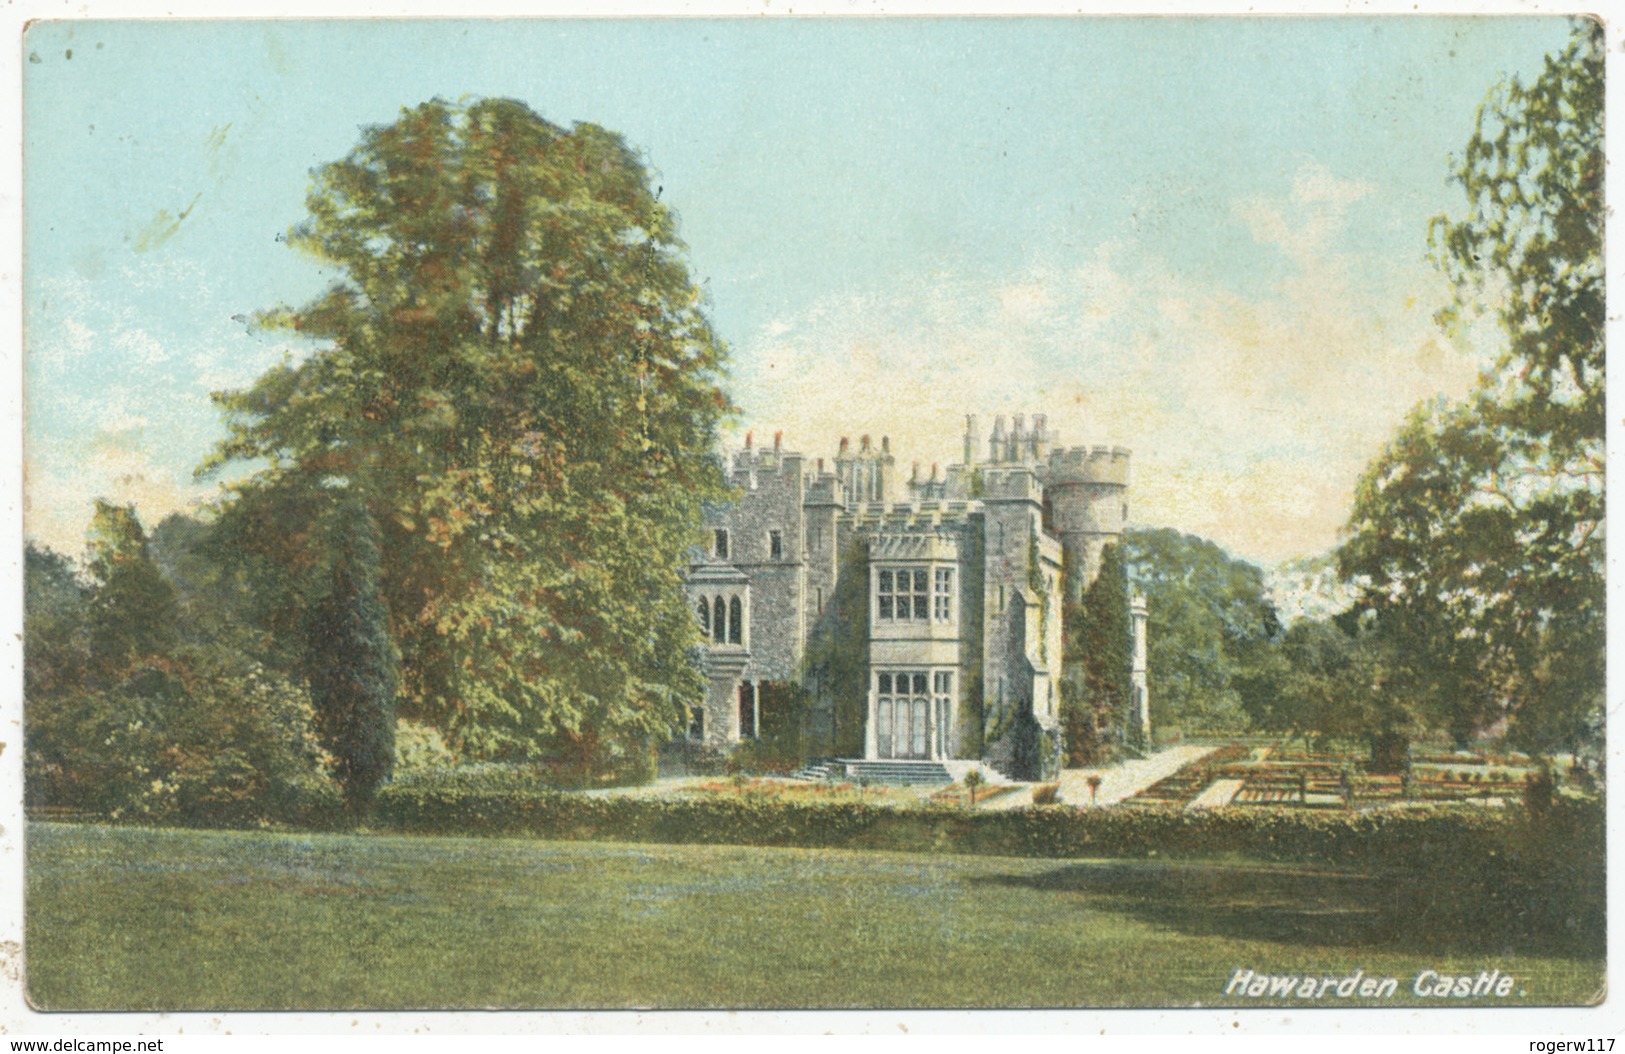 Hawarden Castle - Flintshire